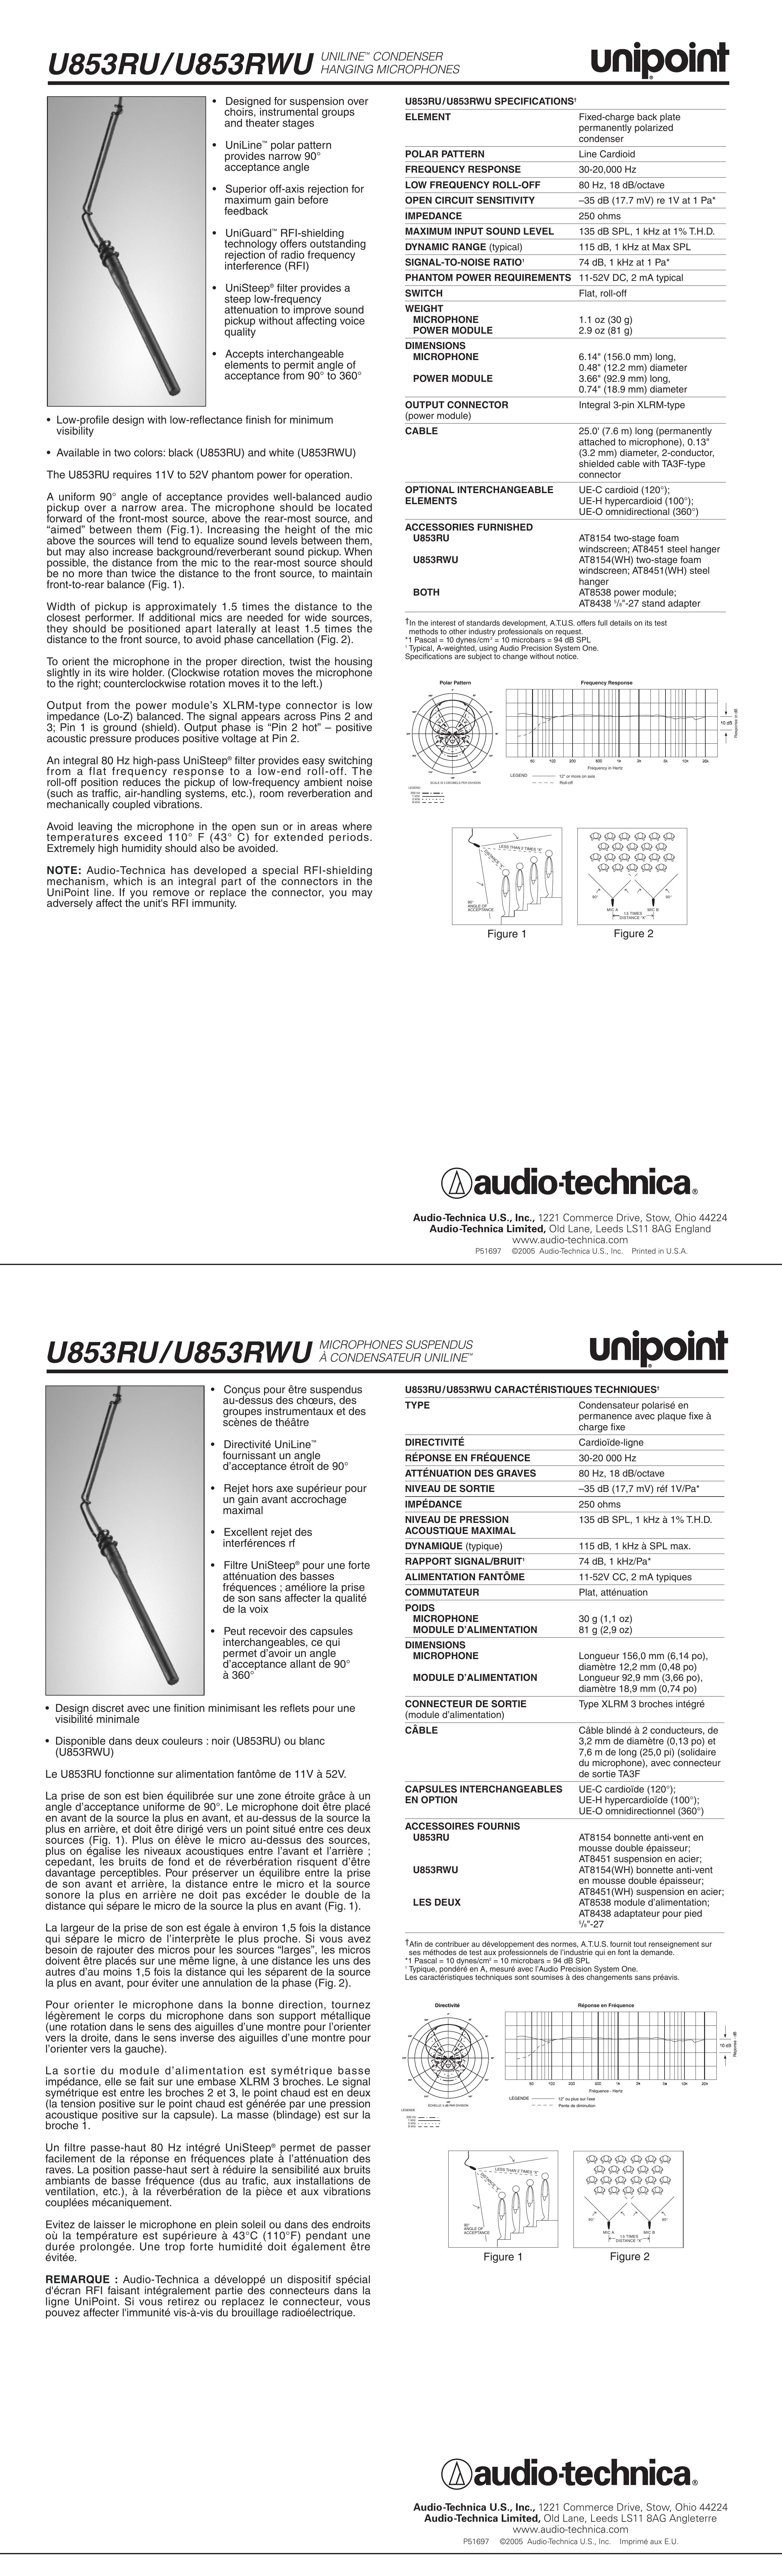 Audio-Technica U853RU Musical Instrument User Manual